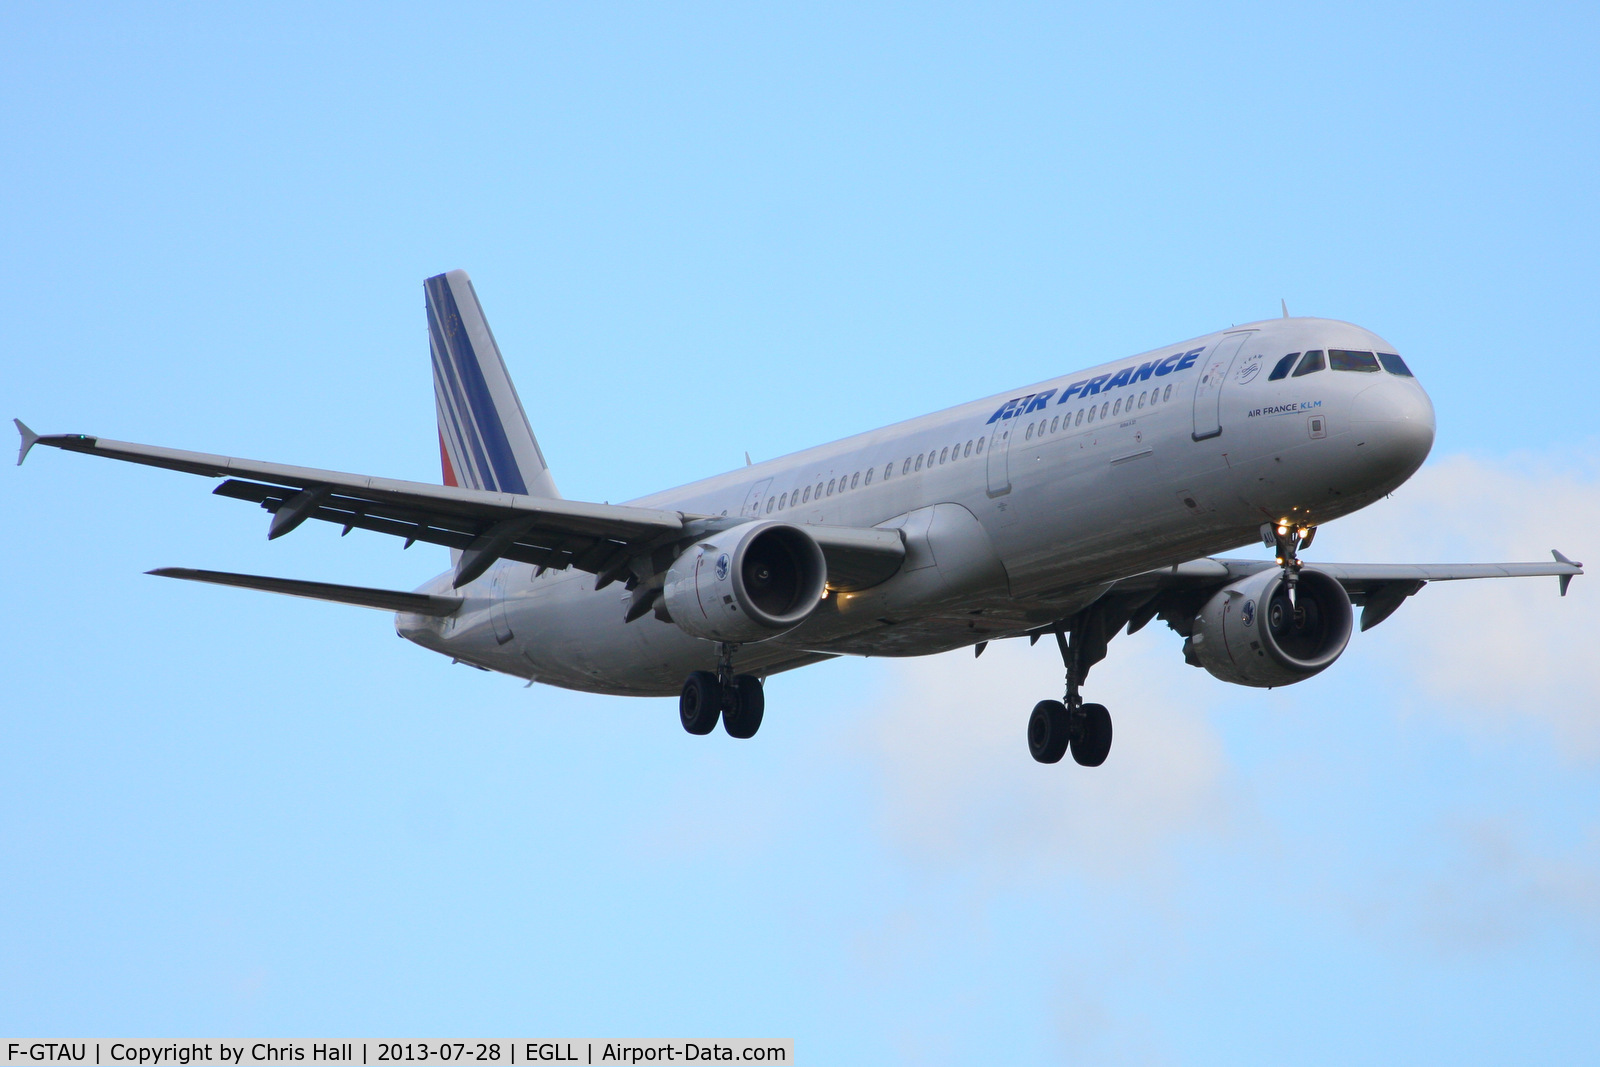 F-GTAU, 2009 Airbus A321-212 C/N 3814, Air France